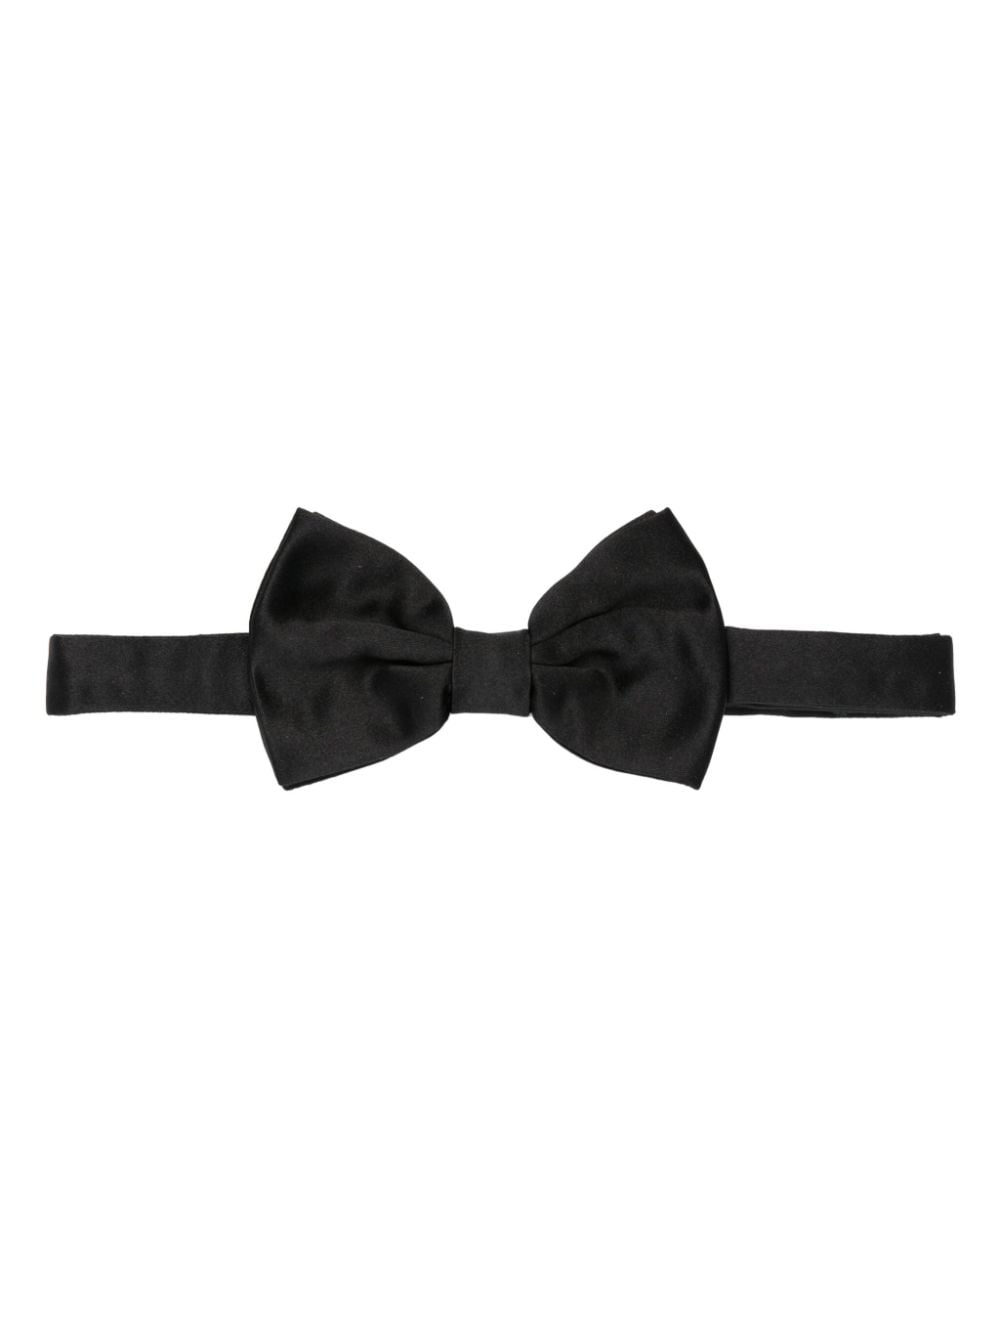 Adjustable silk bow tie